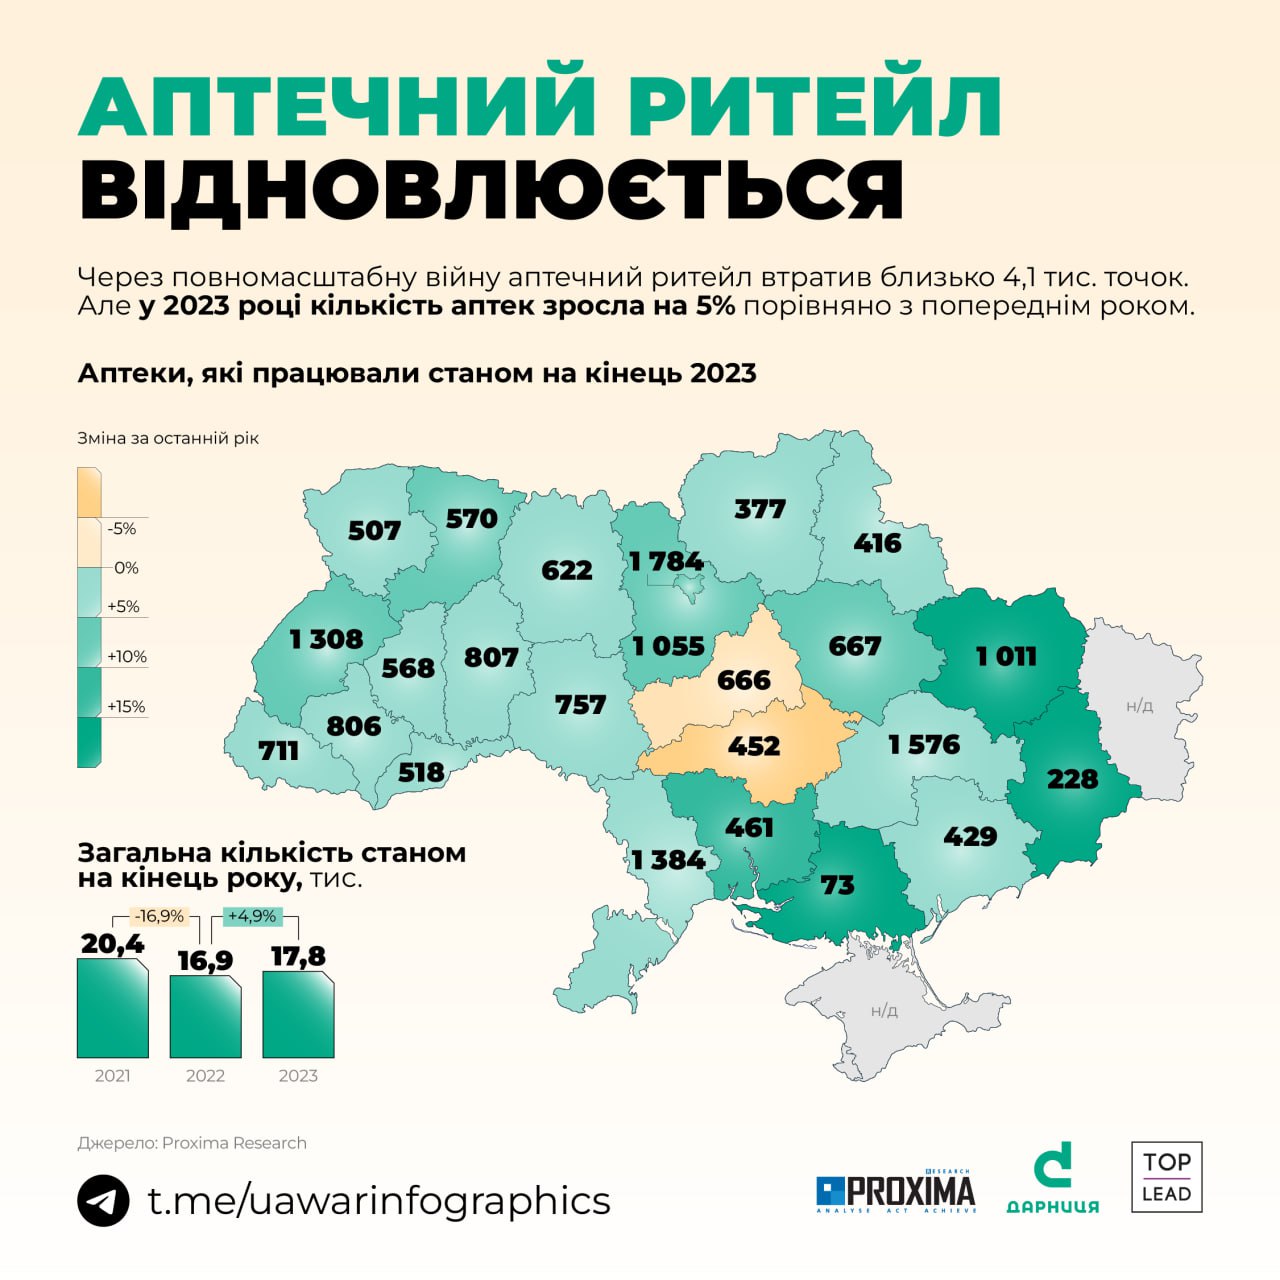 Через повномасштабну війну в Україні закрились понад 4 000 аптек, але у 2023 році їх знову більшає — зростання становило 5%